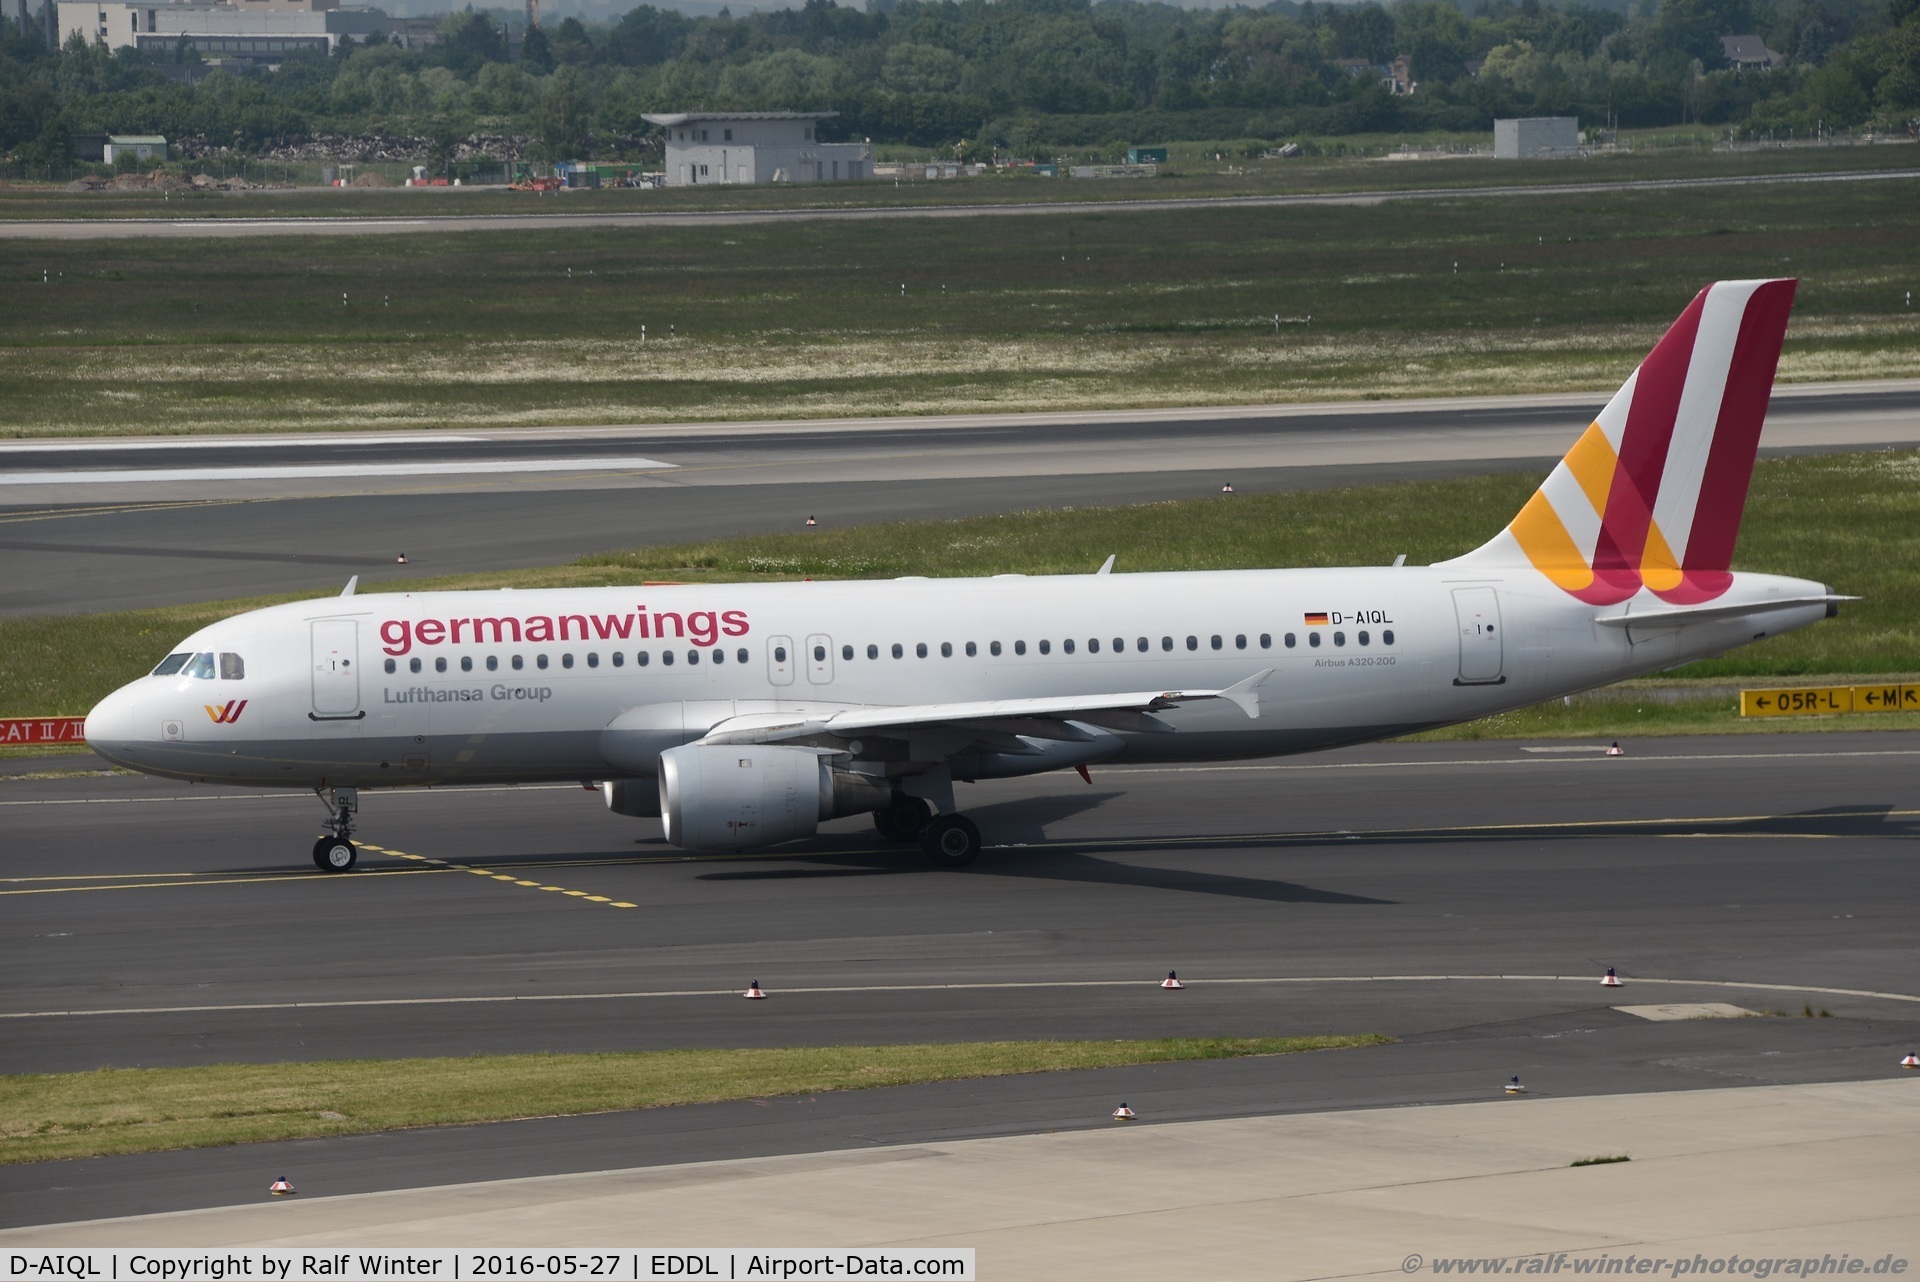 D-AIQL, 1991 Airbus A320-211 C/N 0267, Airbus A320-211 - 4U GWI - Germanwings ex. Lufthansa 'Stralsund' - 267 - D-AIQL - 27.05.2016 - DUS